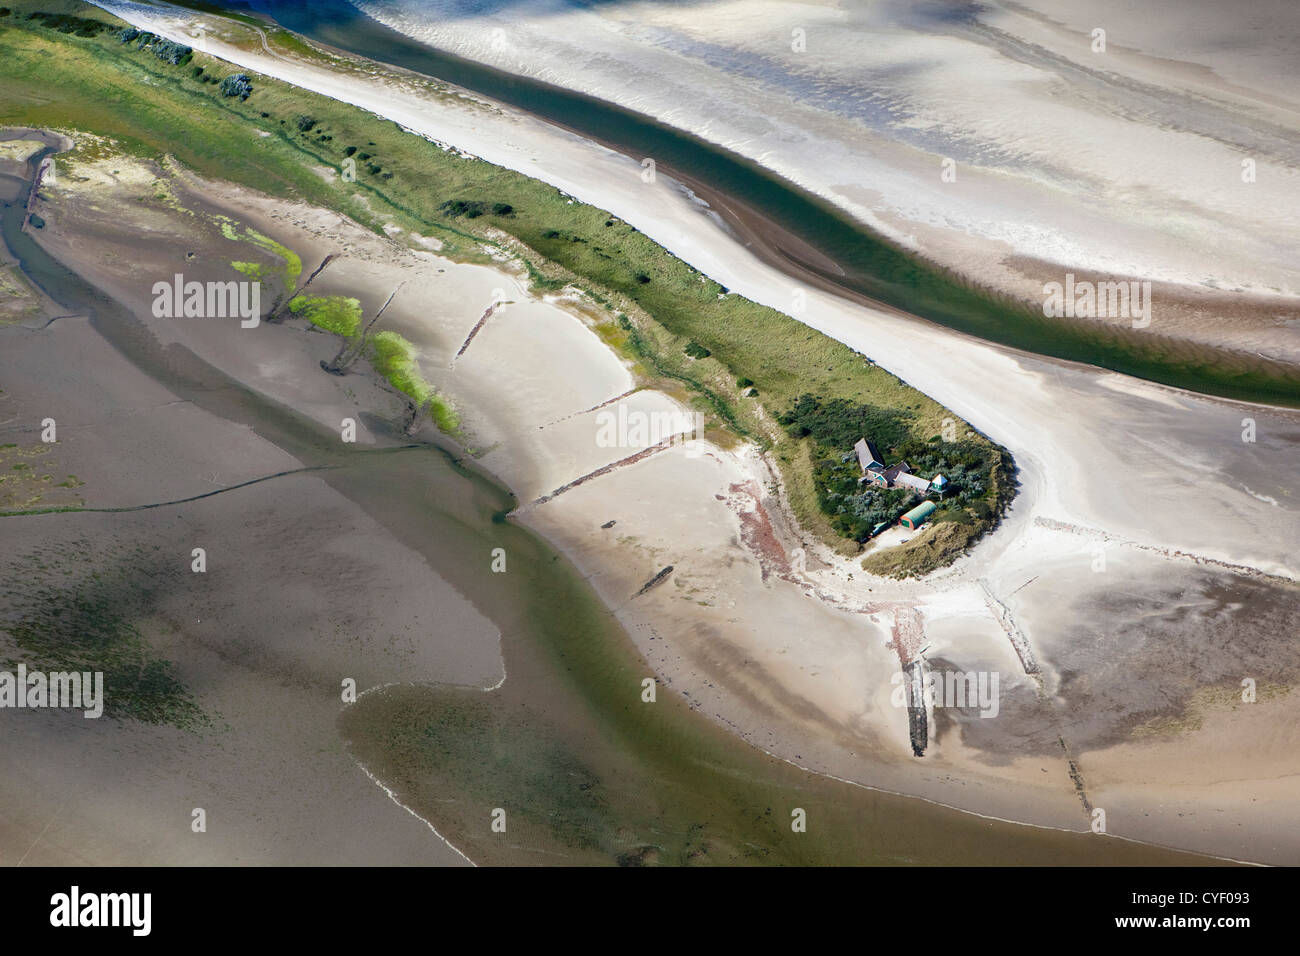 Île appelée Rottumerplaat. Une partie de la mer des Wadden islands. UNESCO World Heritage Site. Marais, vasières. Vue aérienne. Banque D'Images